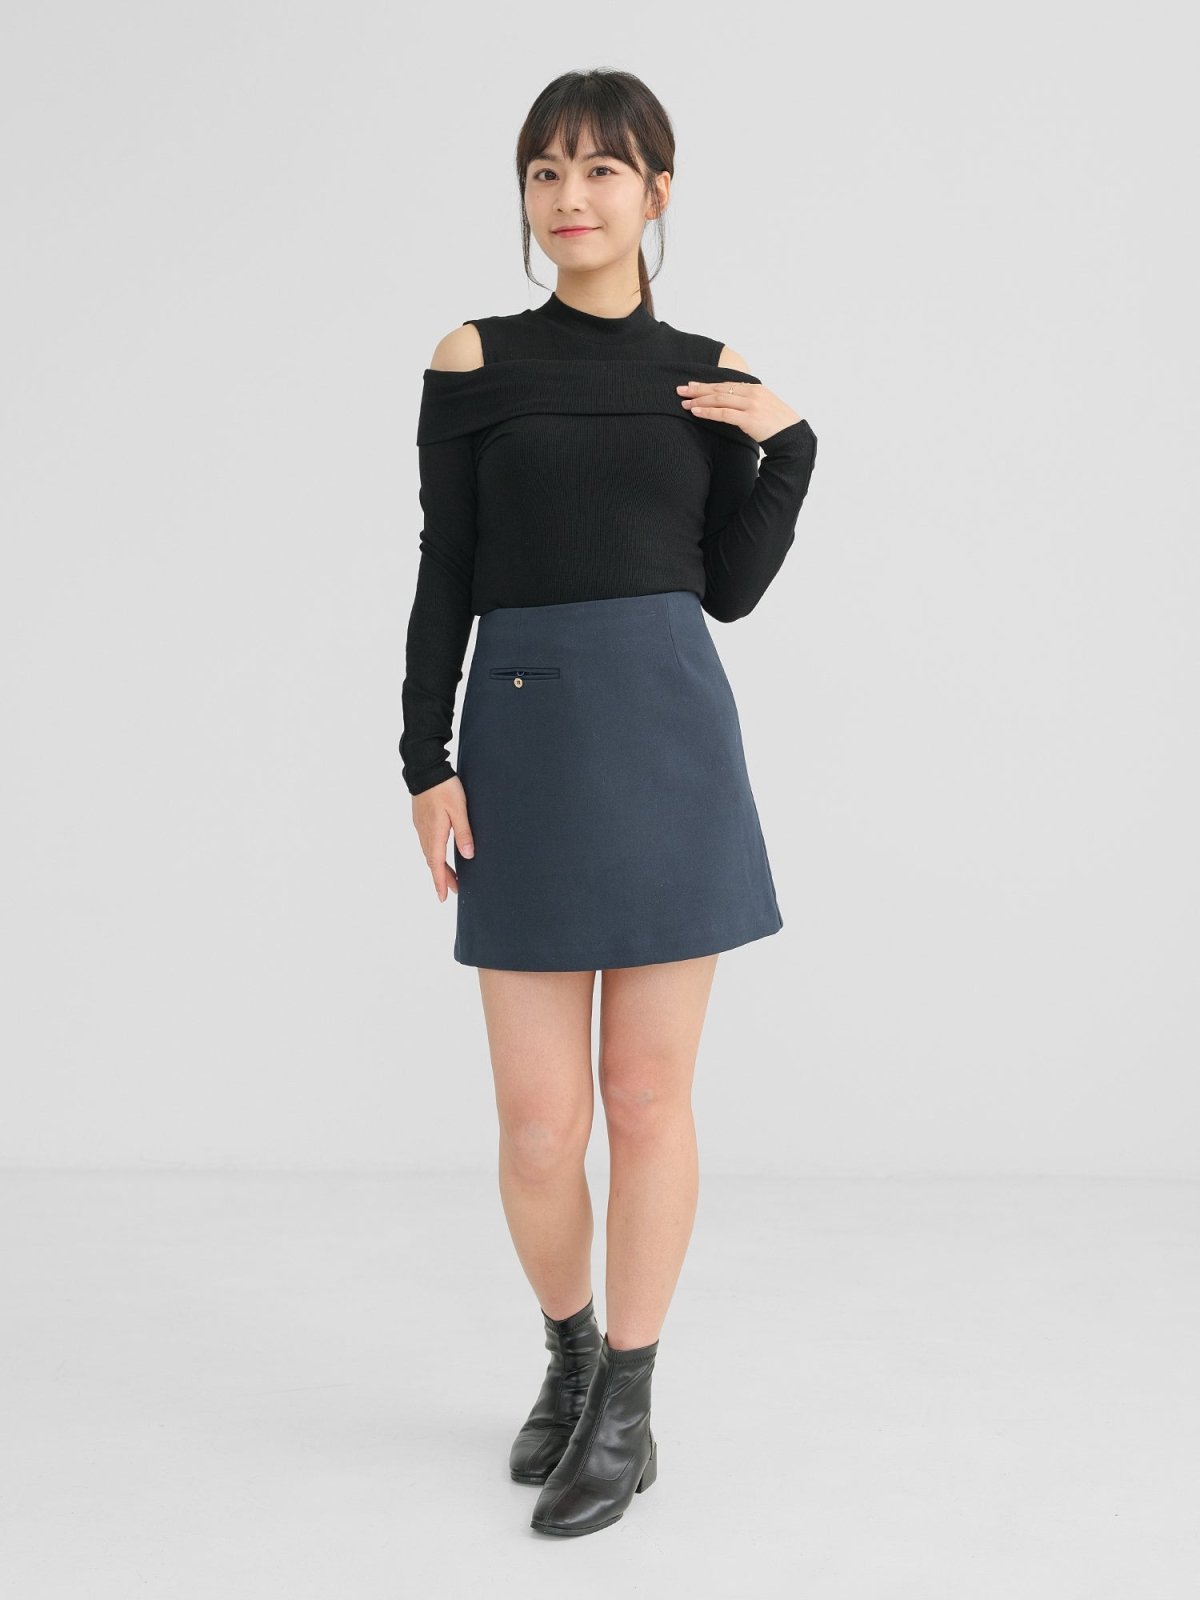 Winter A-line Skirt - DAG-DD1321-23NavyTealS - Navy Teal - S - D'zage Designs